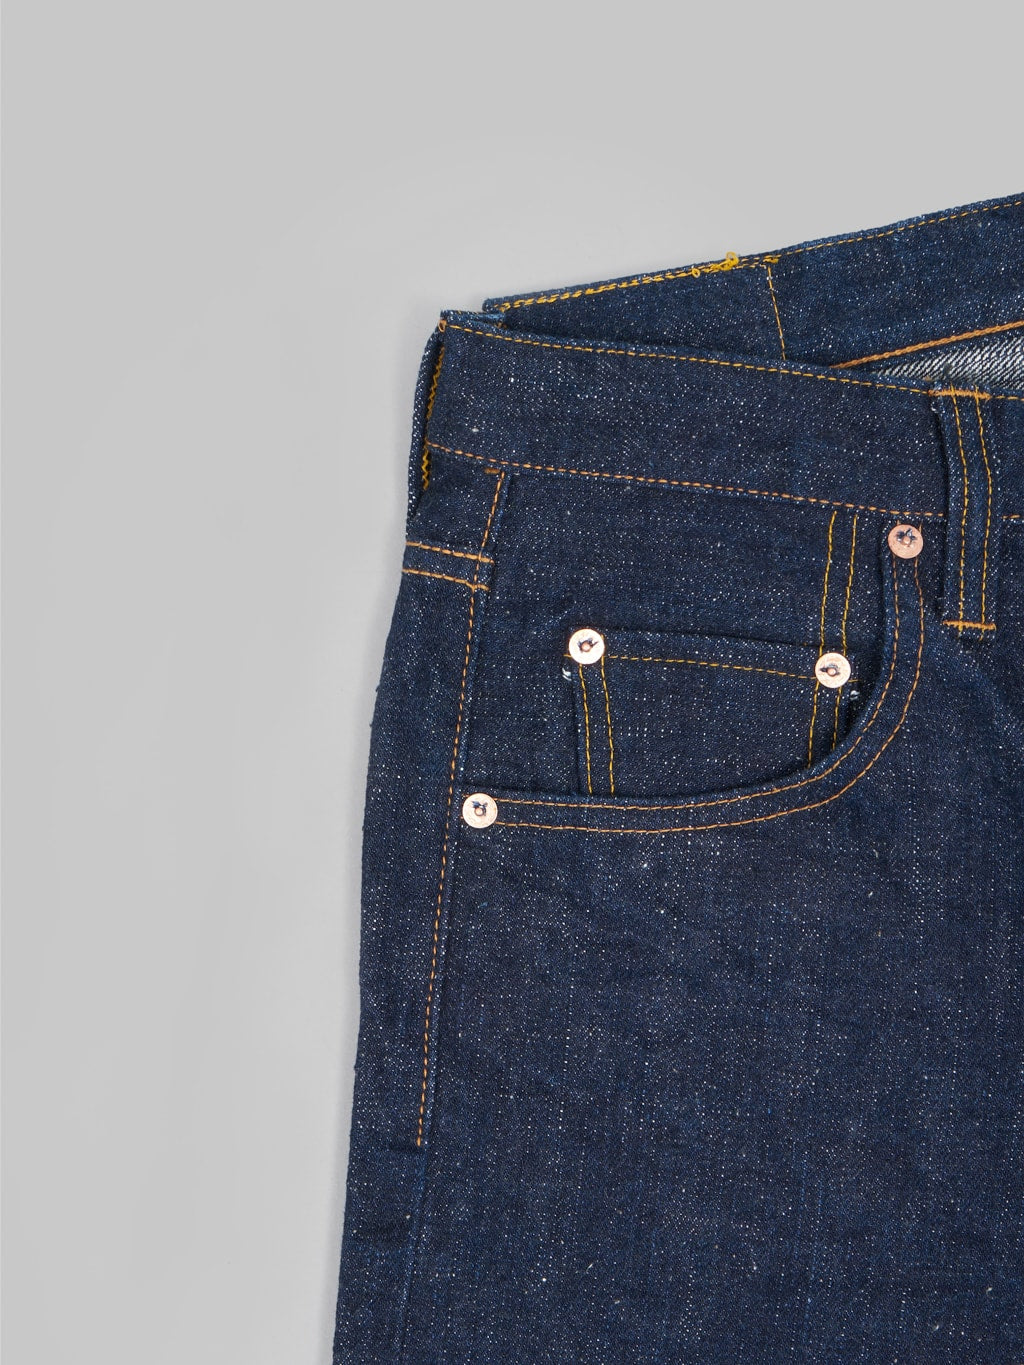 samurai jeans s211ax ai benkei natural indigo 18oz relaxed tapered jeans cotton